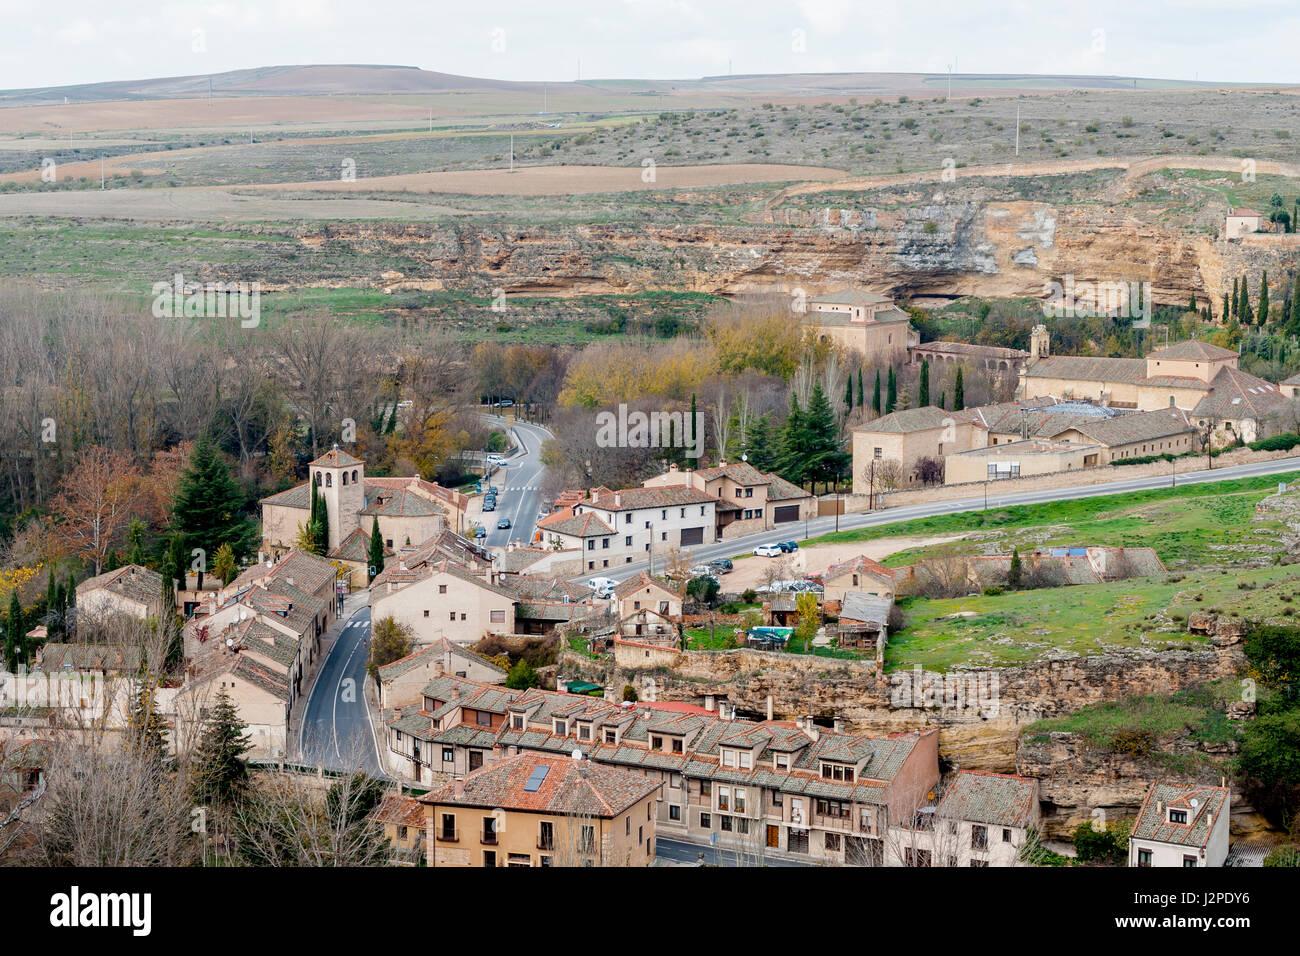 Vista aérea desde el mirador del valle del río Eresma del santuario de la virgen de la Fuencisla y el convento de los carmelitas descalzos en Segovia. Stock Photo